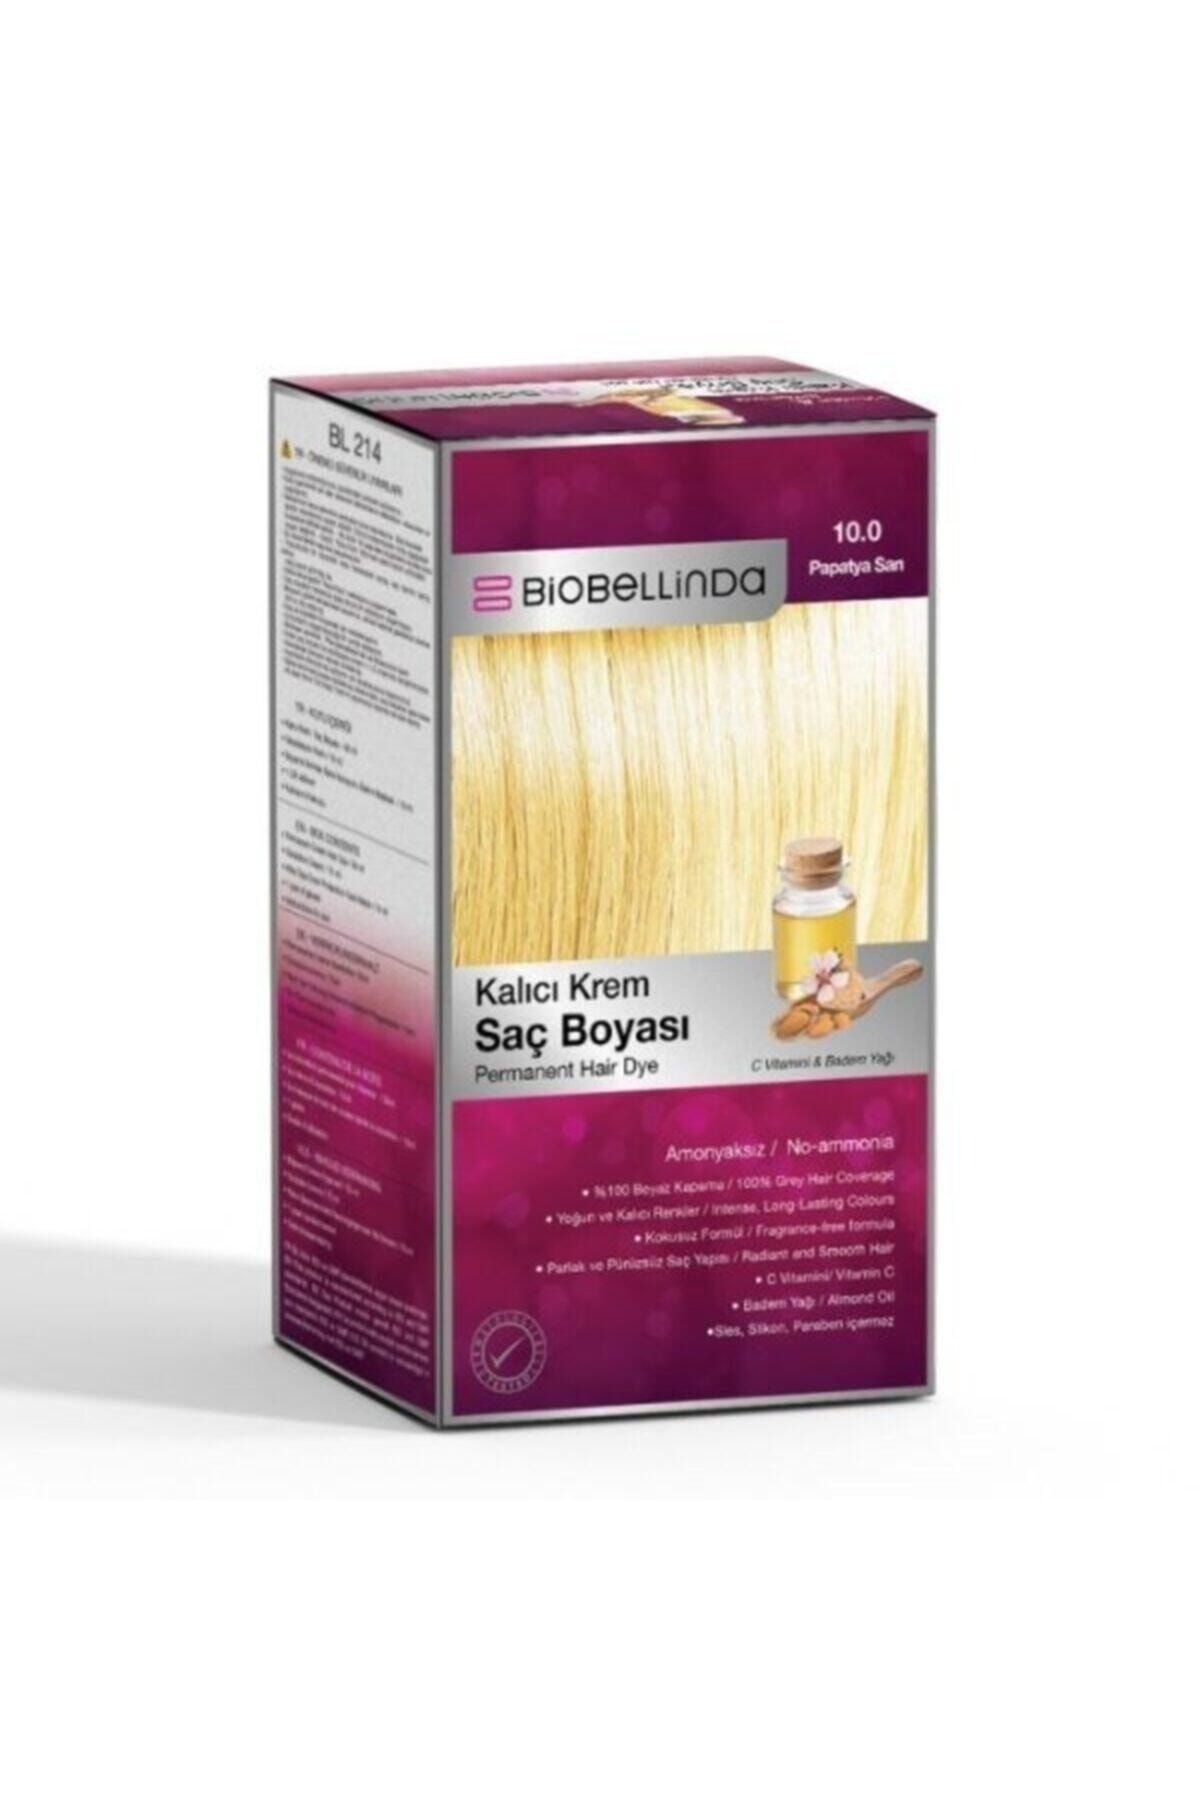 BioBellinda Saç Boyası 10.0 Papatya Sarı